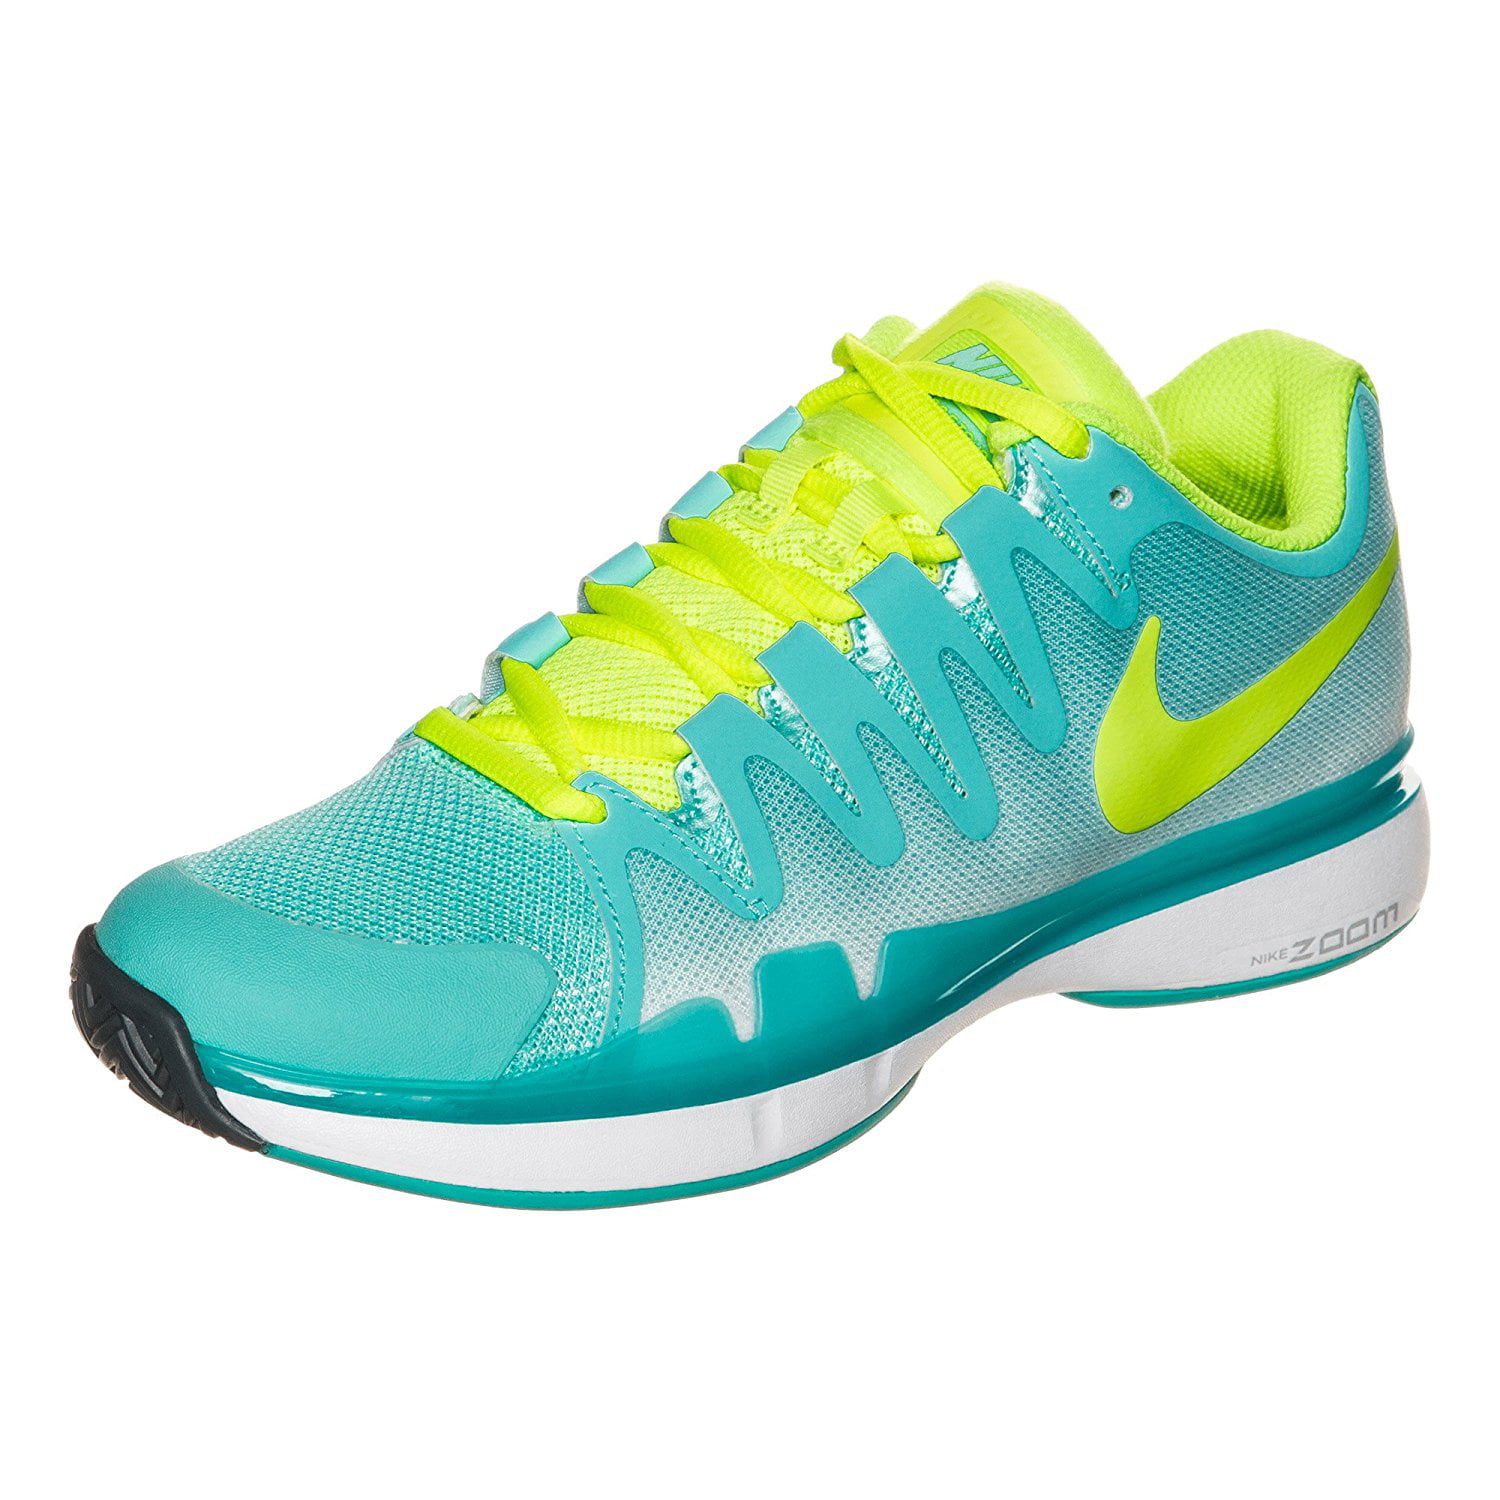 geef de bloem water voor het geval dat Ruwe slaap Nike Women's Zoom Vapor 9.5 Tour Tennis Shoes Light Aqua/Volt Size 6.5M -  Walmart.com